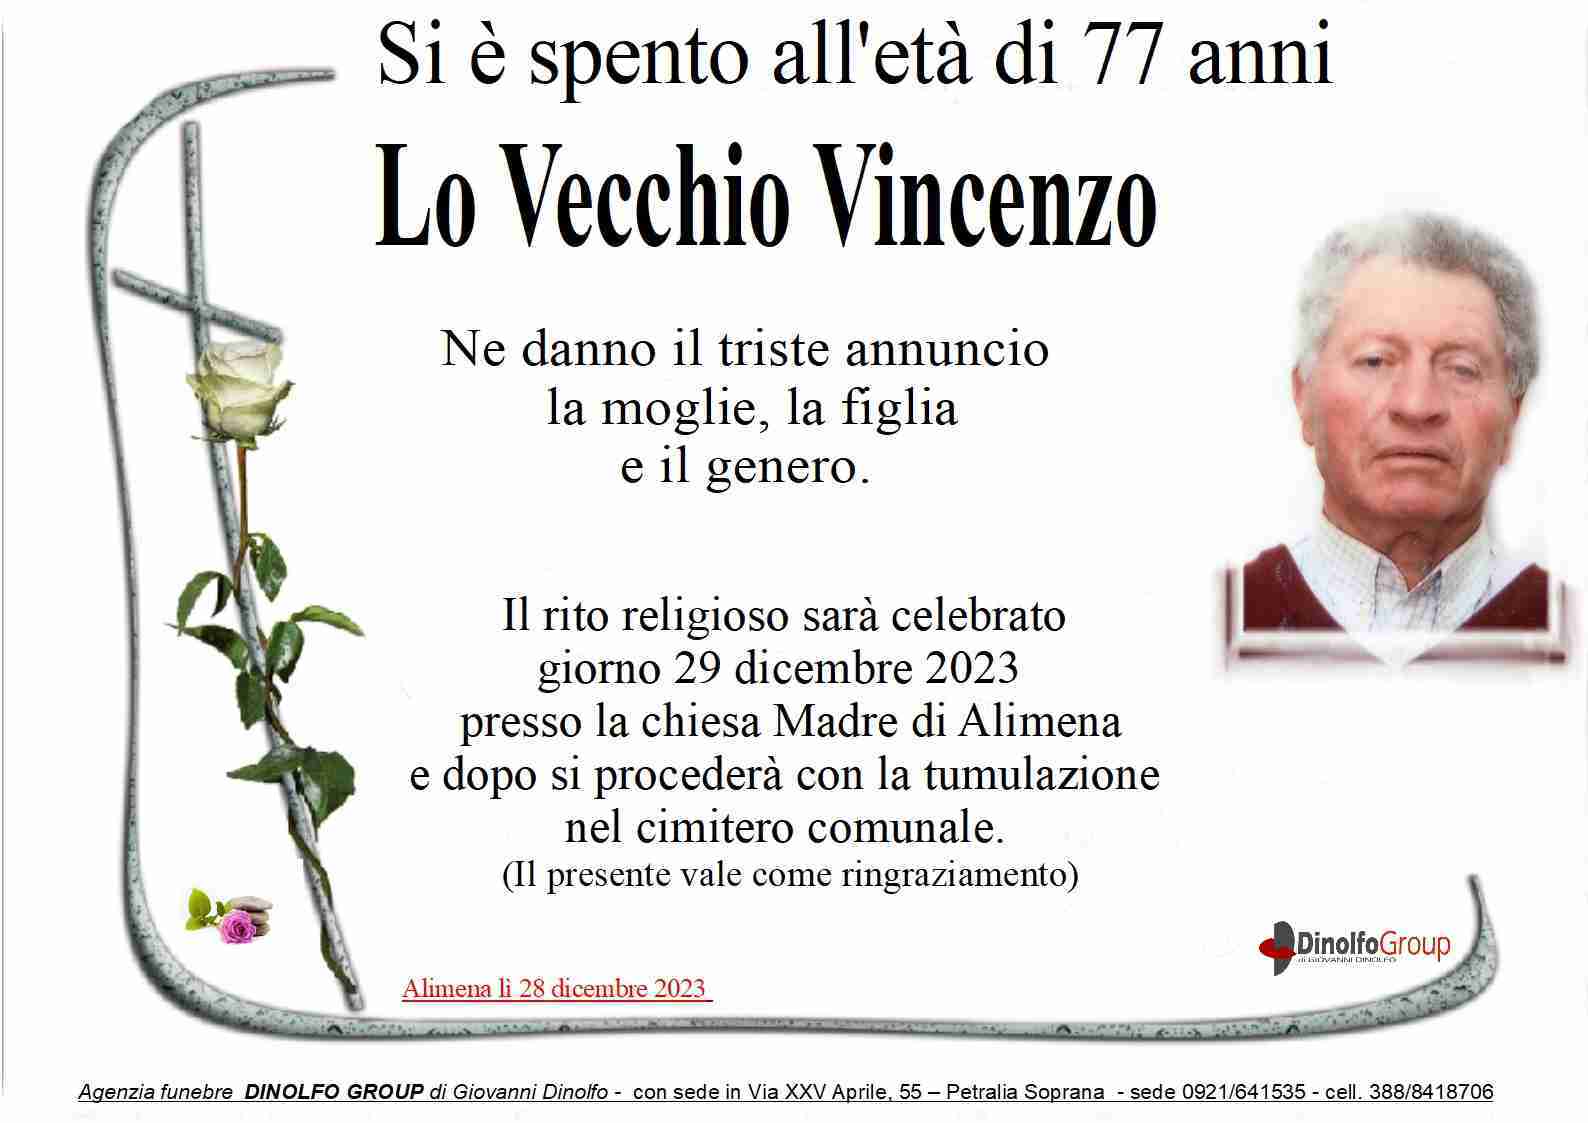 Vincenzo Lo Vecchio